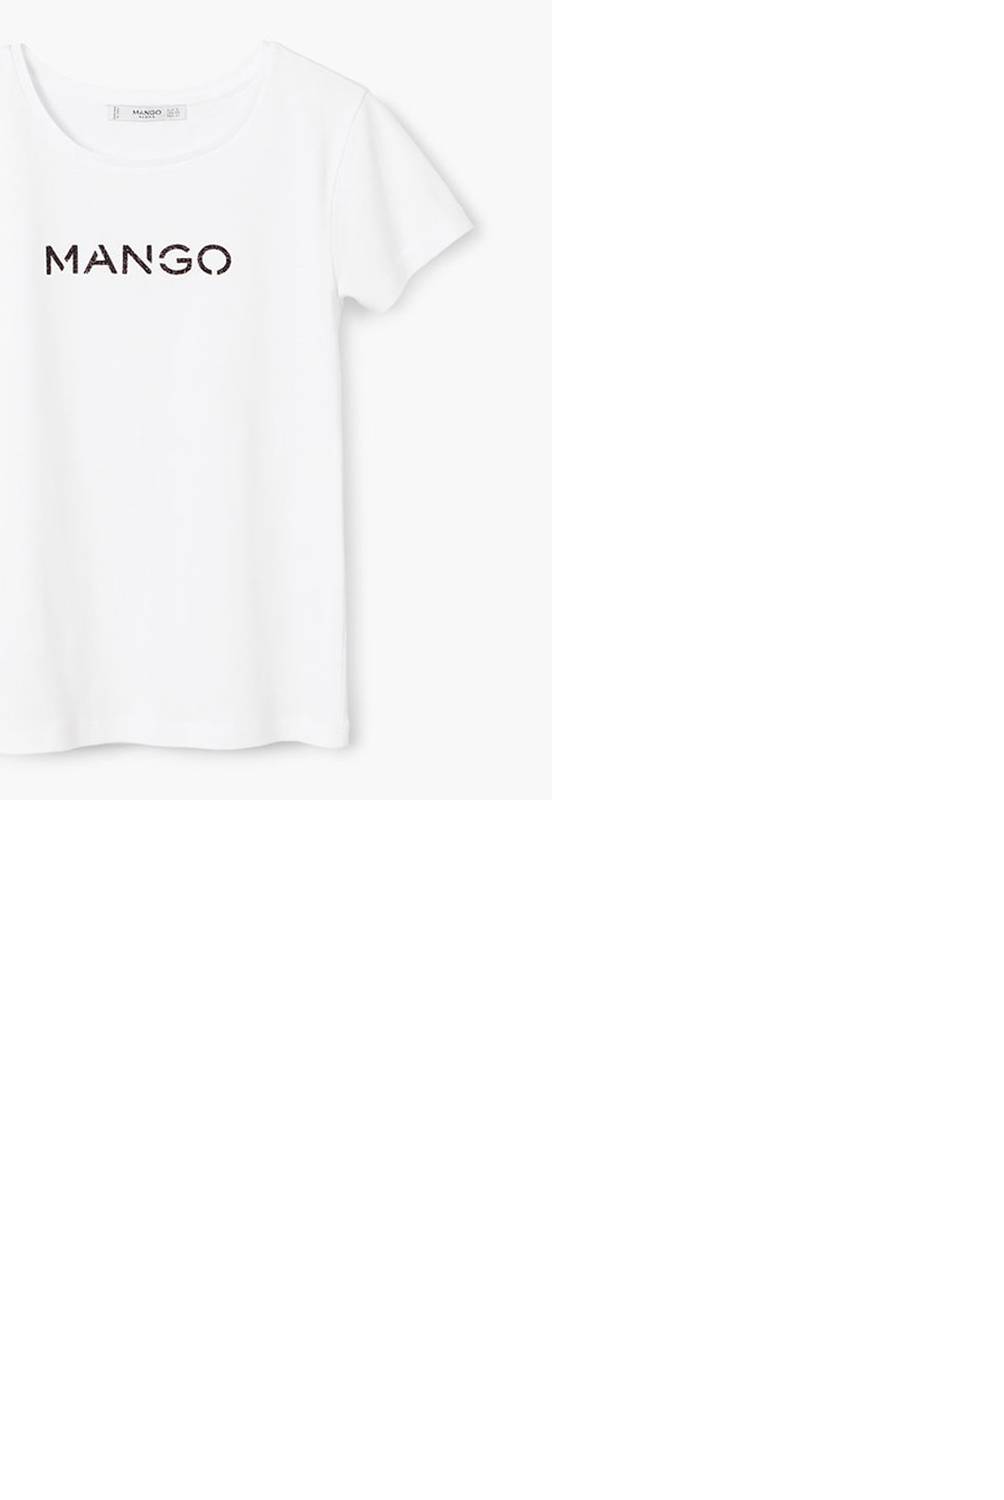 MANGO - Camiseta